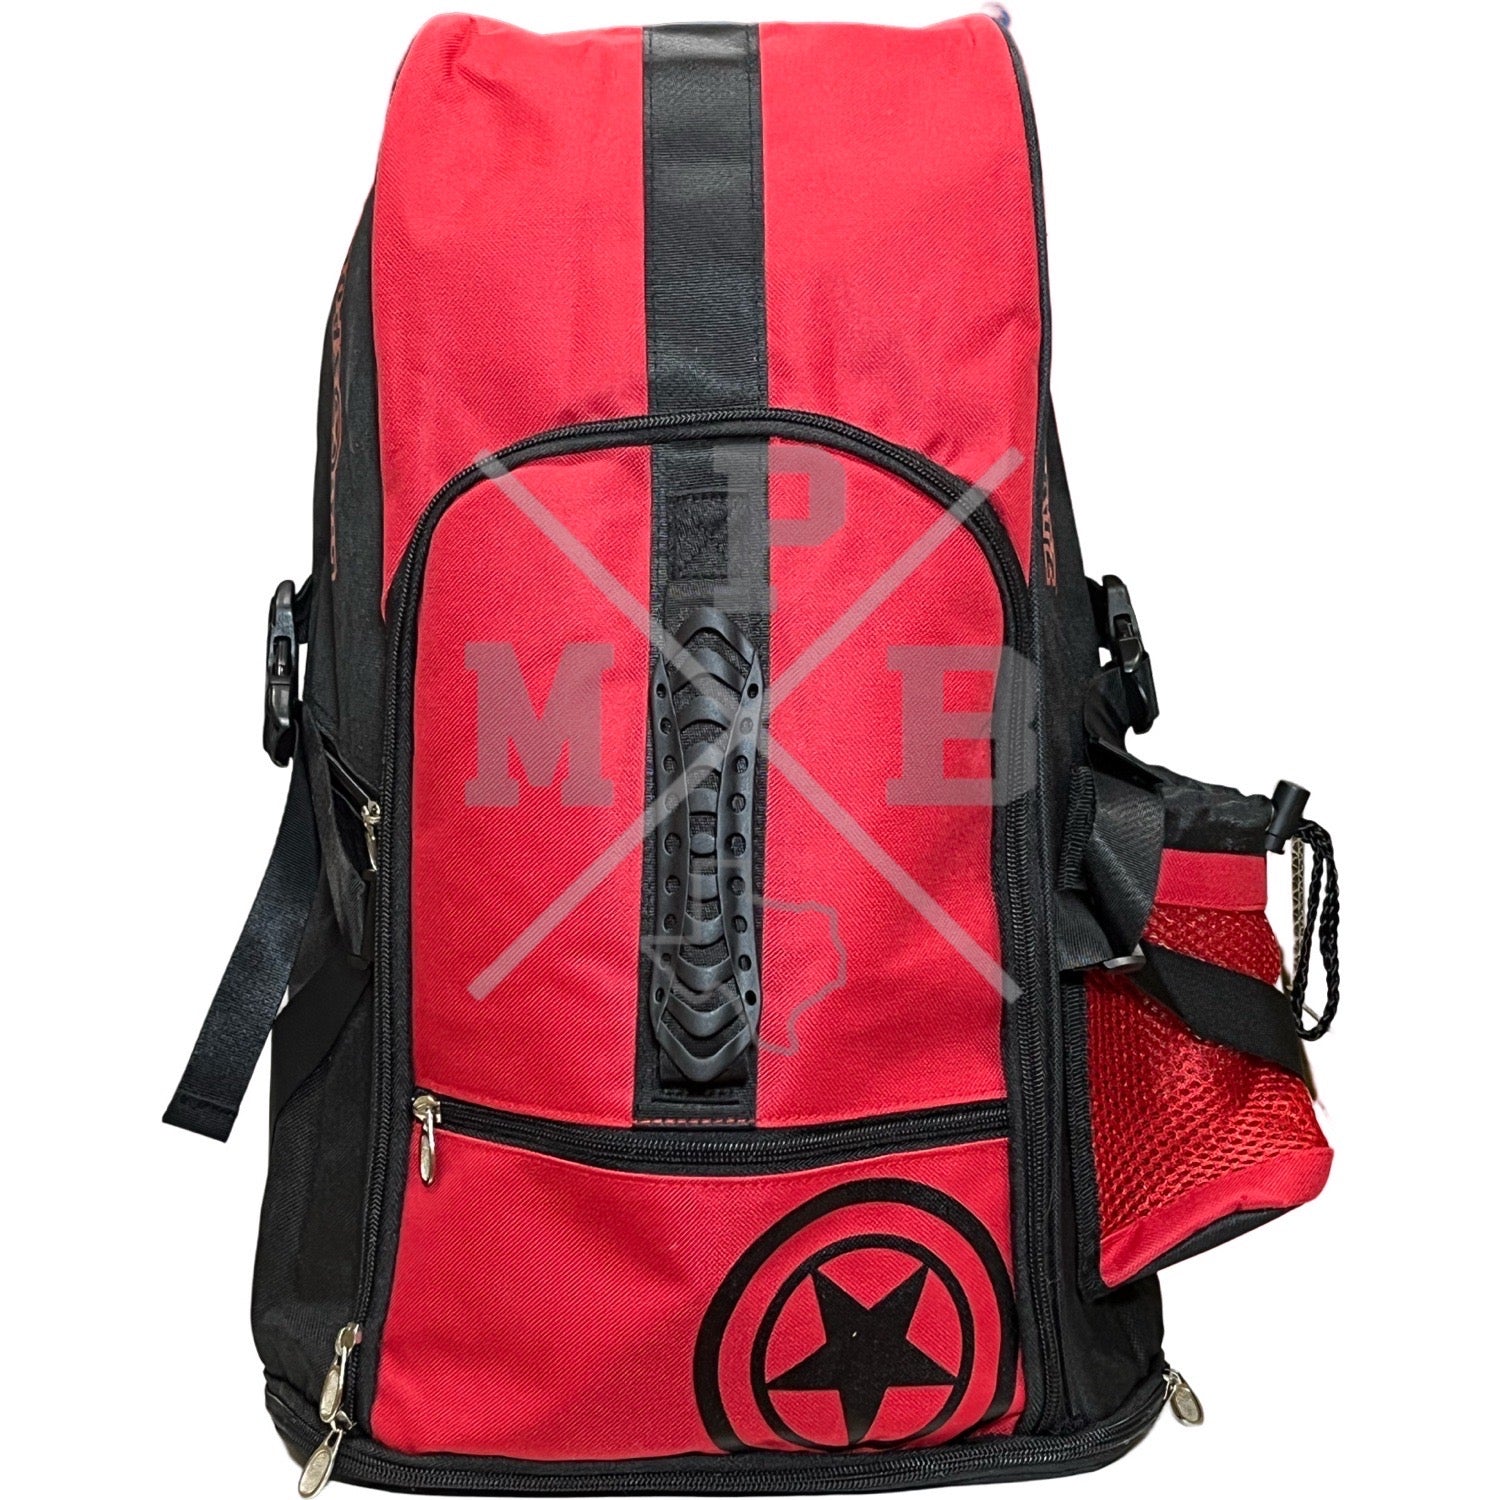 GI Sports Hikr Backpack - Red/Black